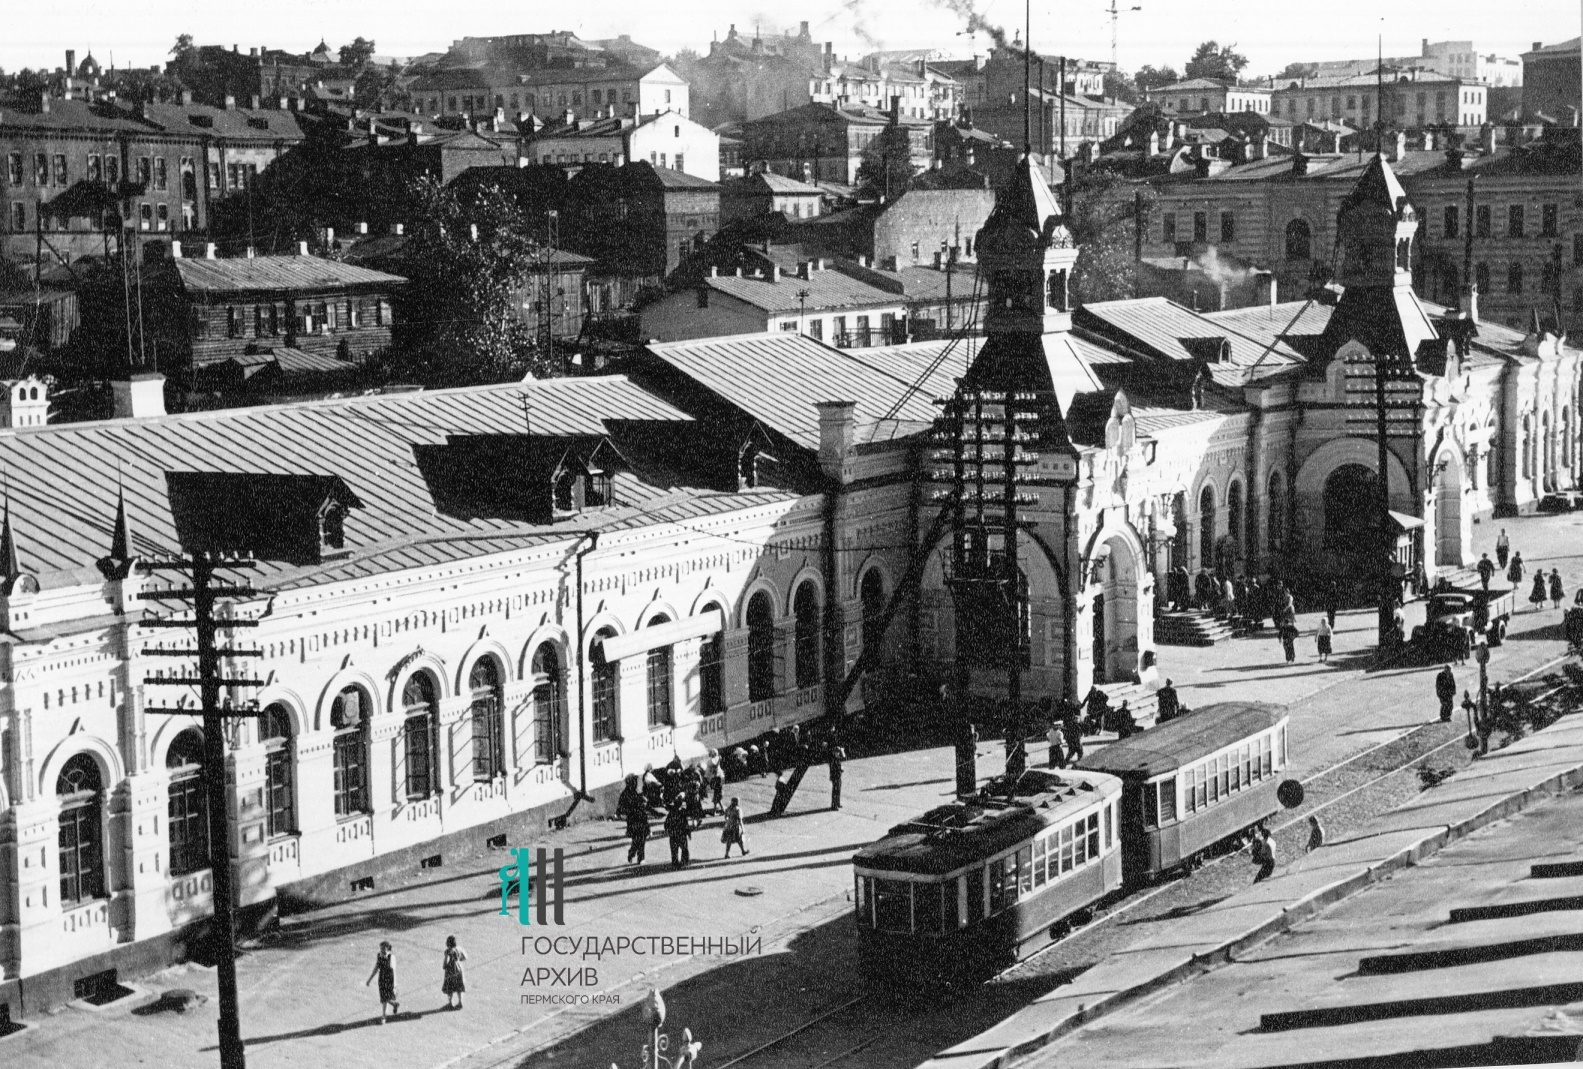 Фото 1960-х. Здание вокзала Пермь I и сейчас такое, а вот трамваев возле него больше не увидишь